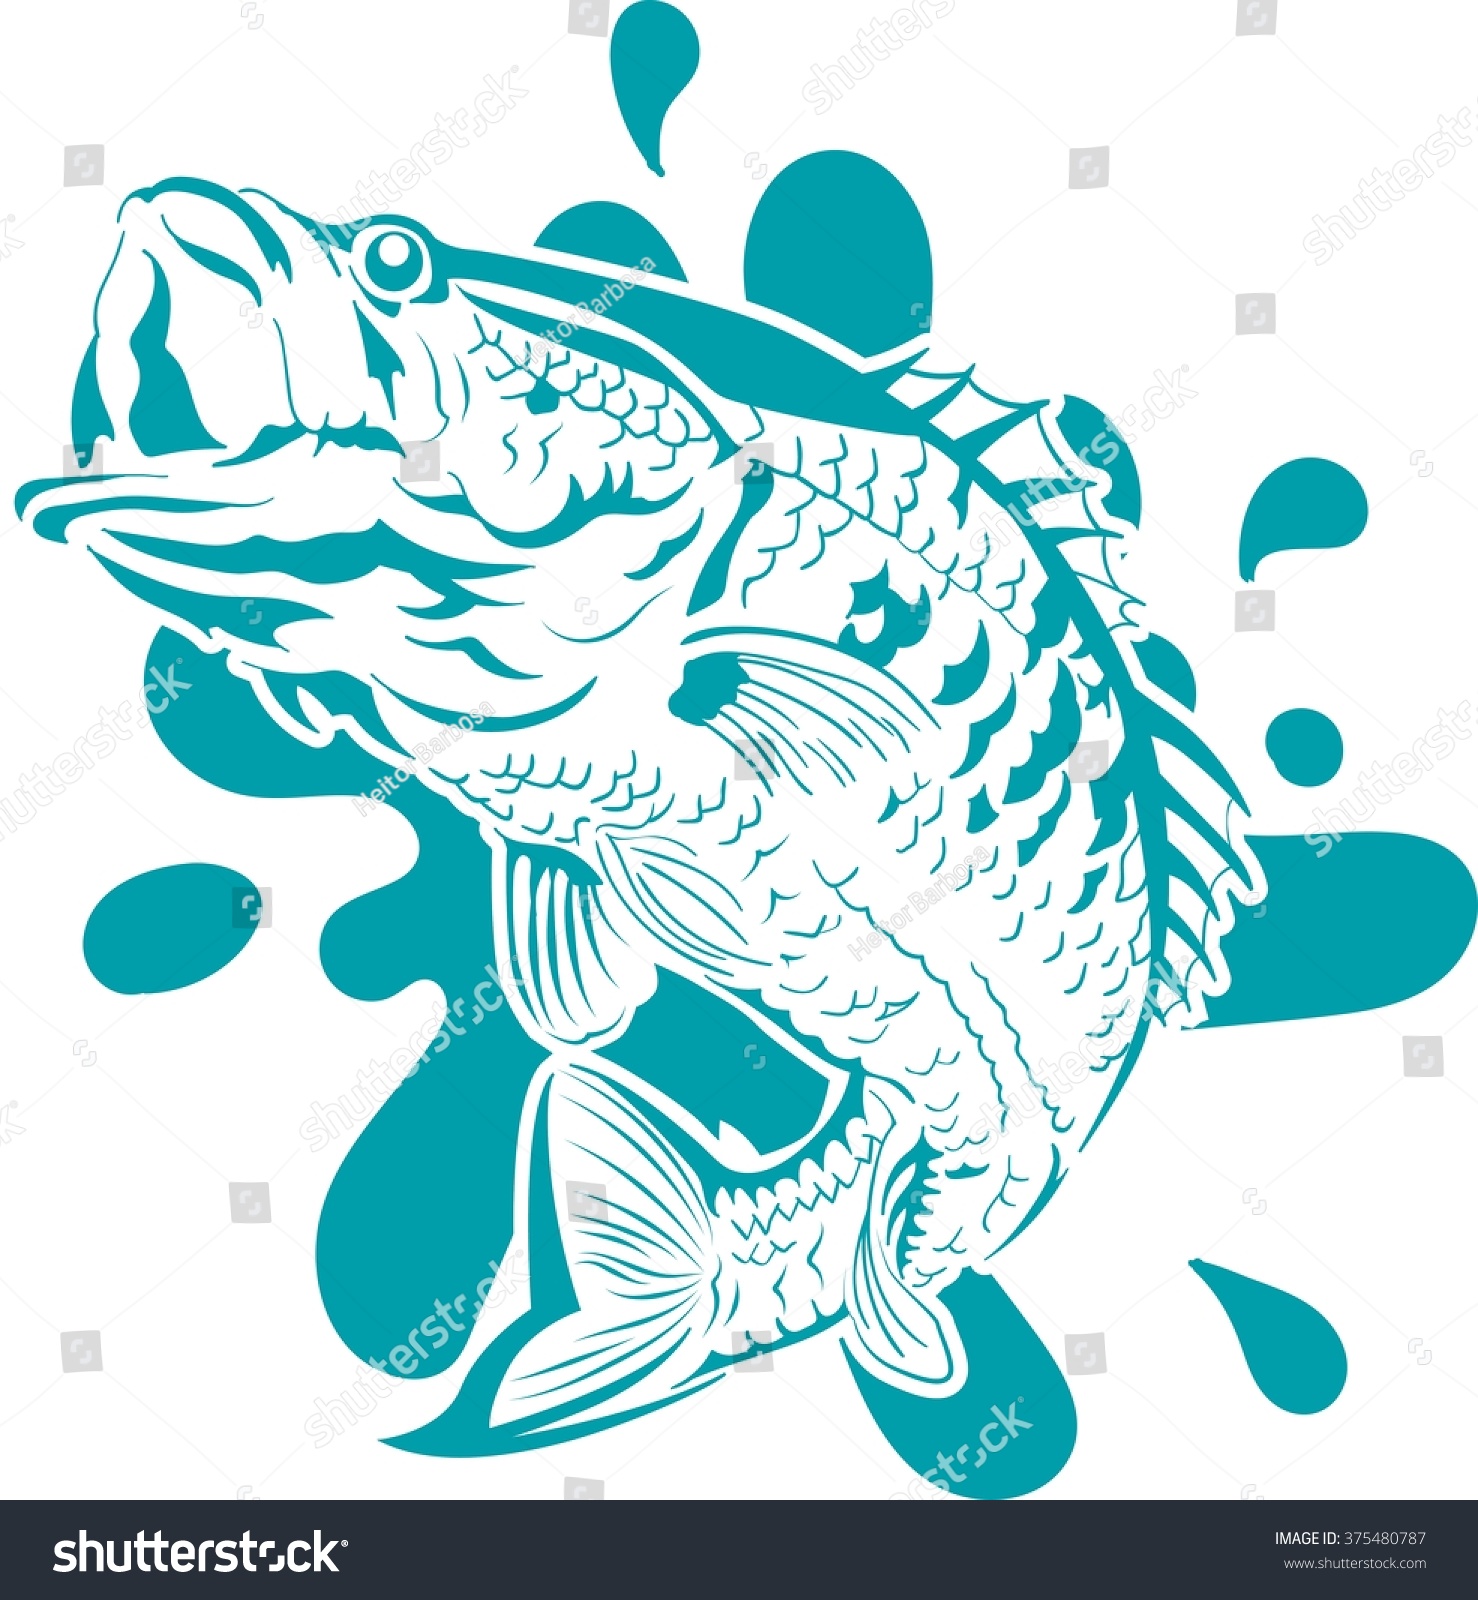 Fish Jumping Vector - 375480787 : Shutterstock